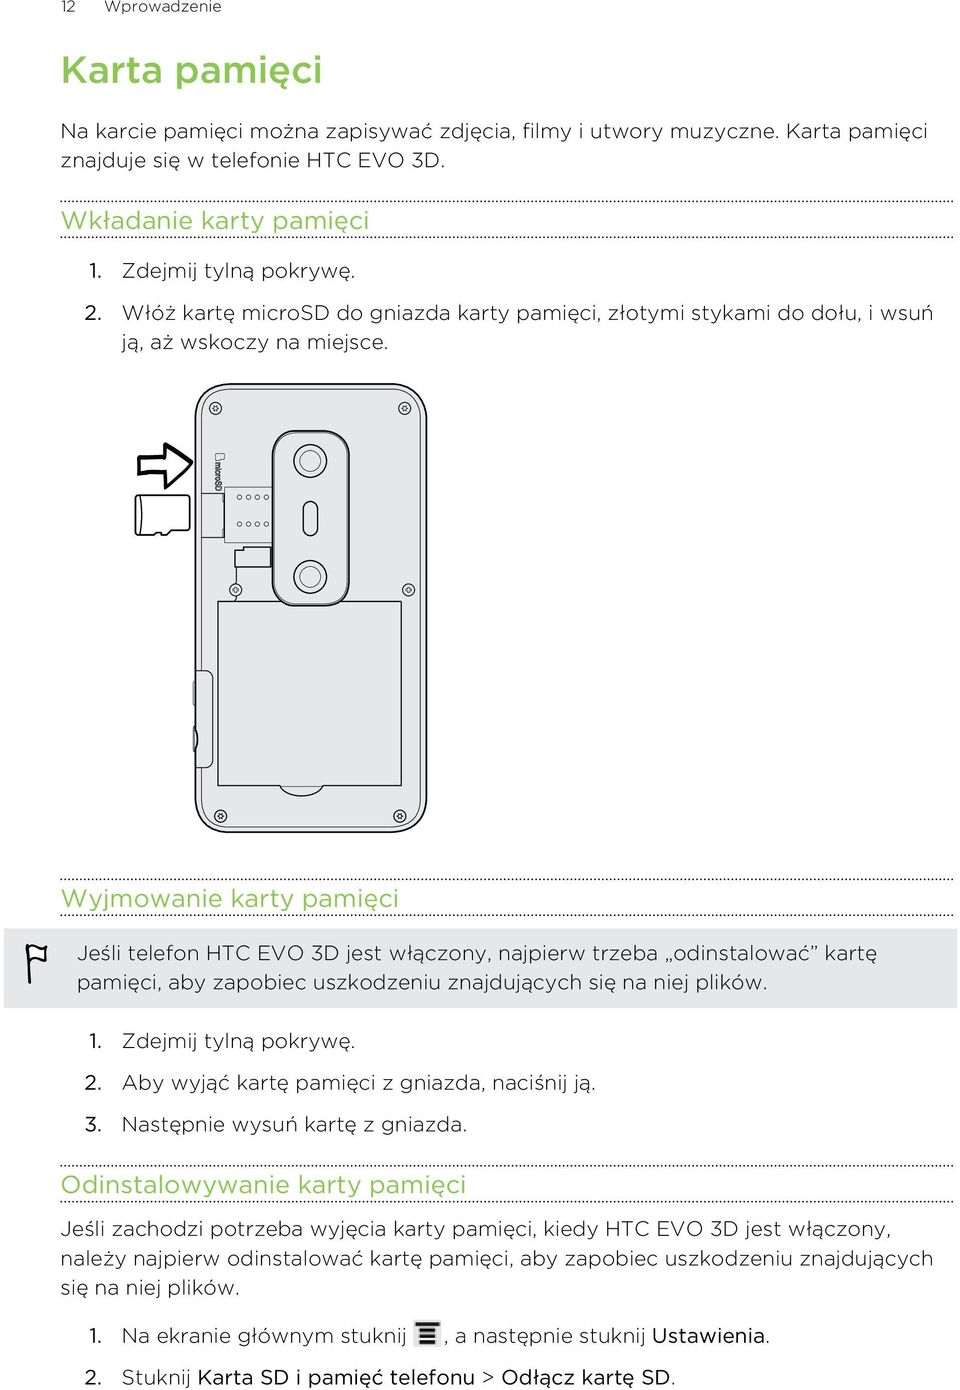 Wyjmowanie karty pamięci Jeśli telefon HTC EVO 3D jest włączony, najpierw trzeba odinstalować kartę pamięci, aby zapobiec uszkodzeniu znajdujących się na niej plików. 1. Zdejmij tylną pokrywę. 2.